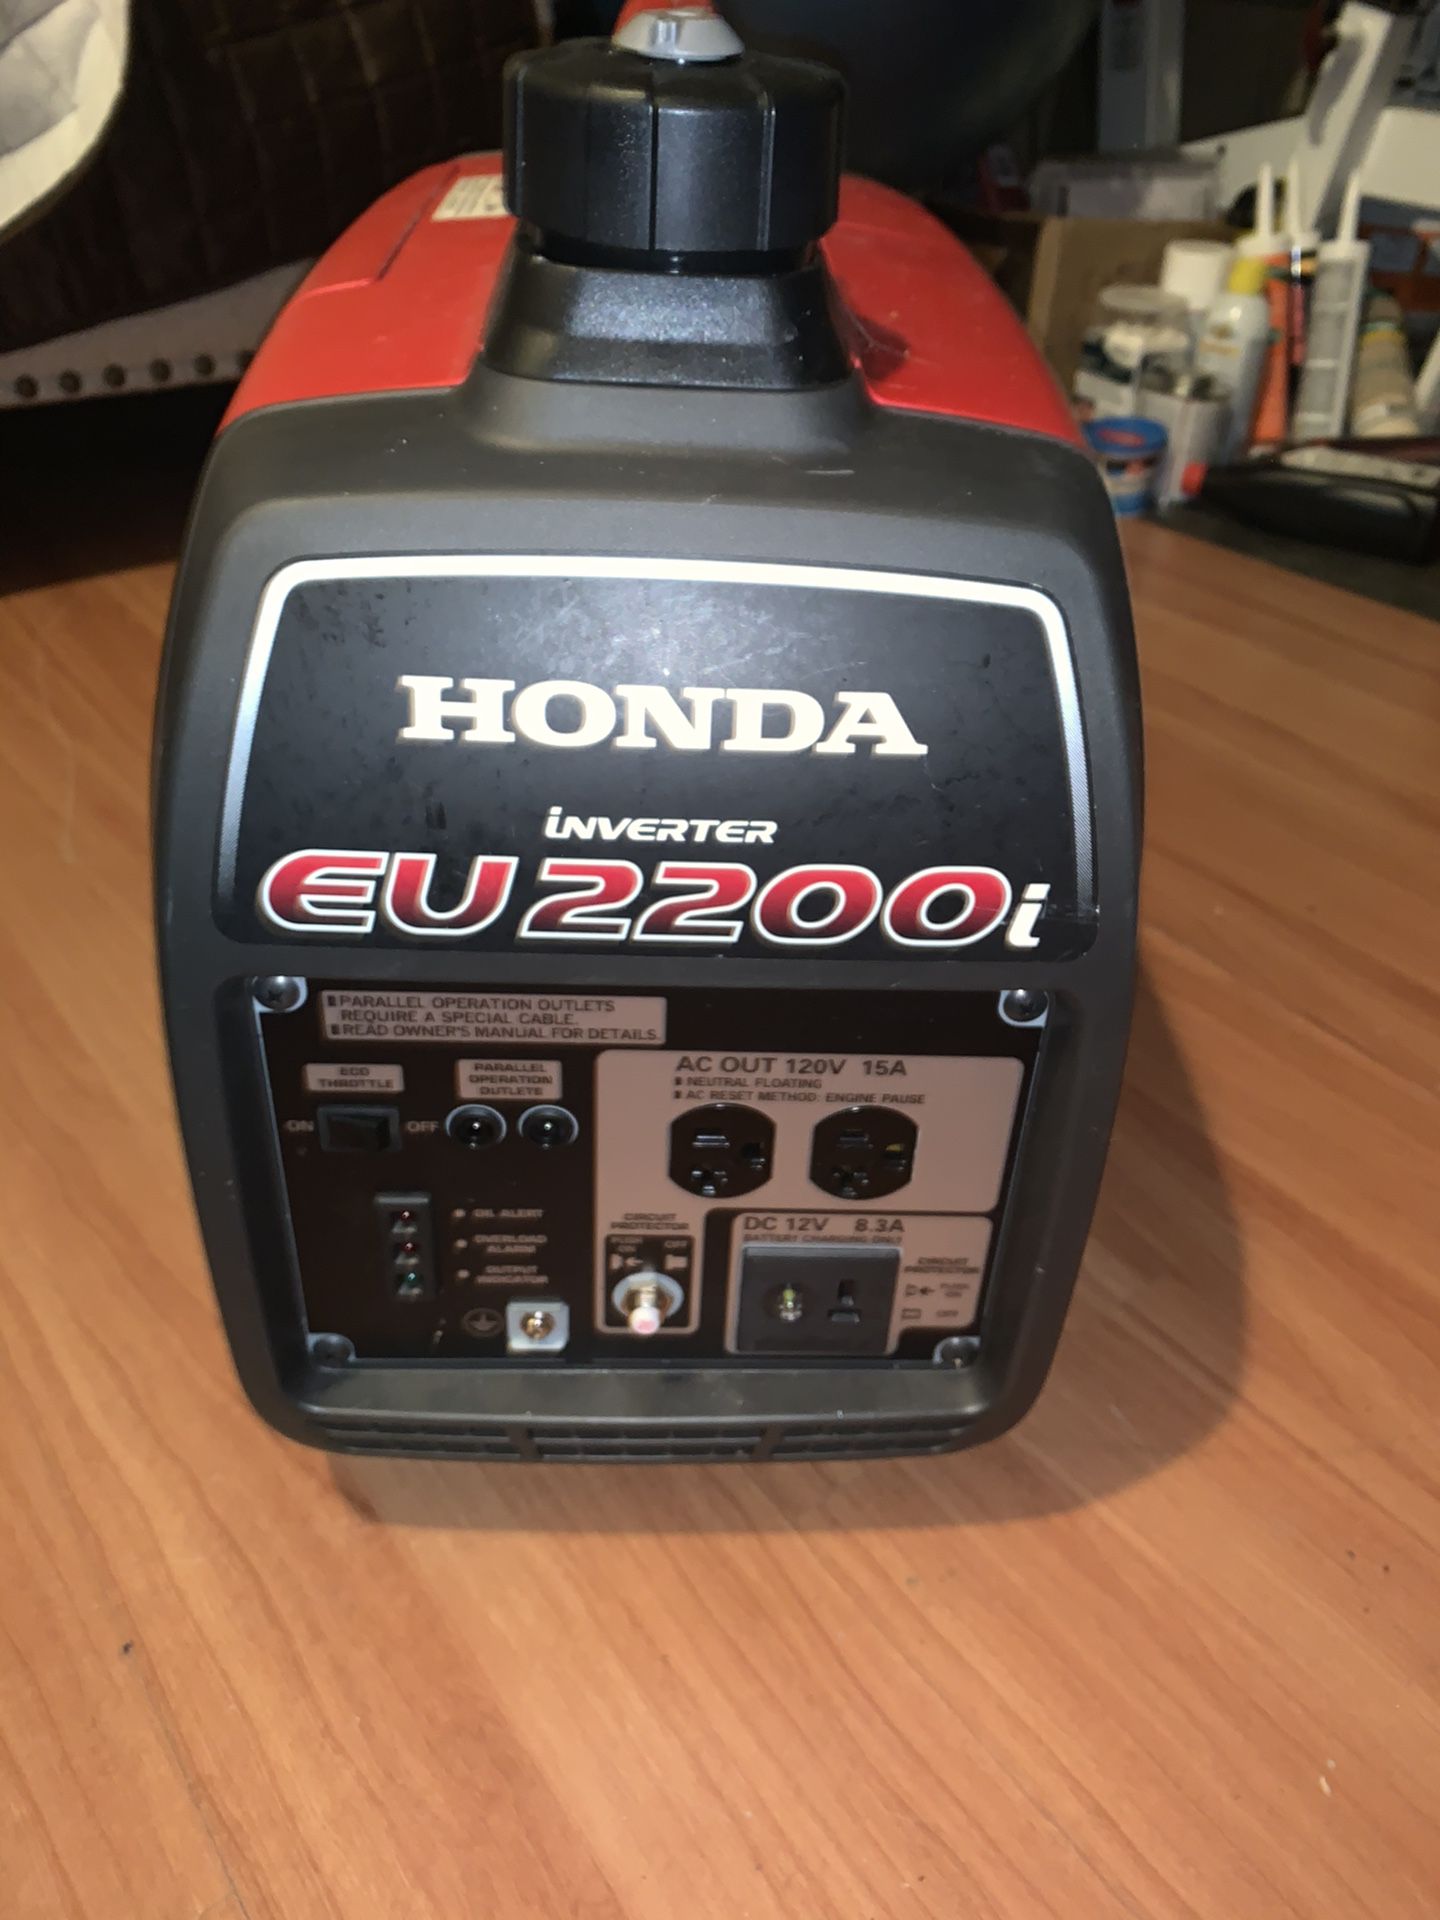 Honda generator eu 2200i